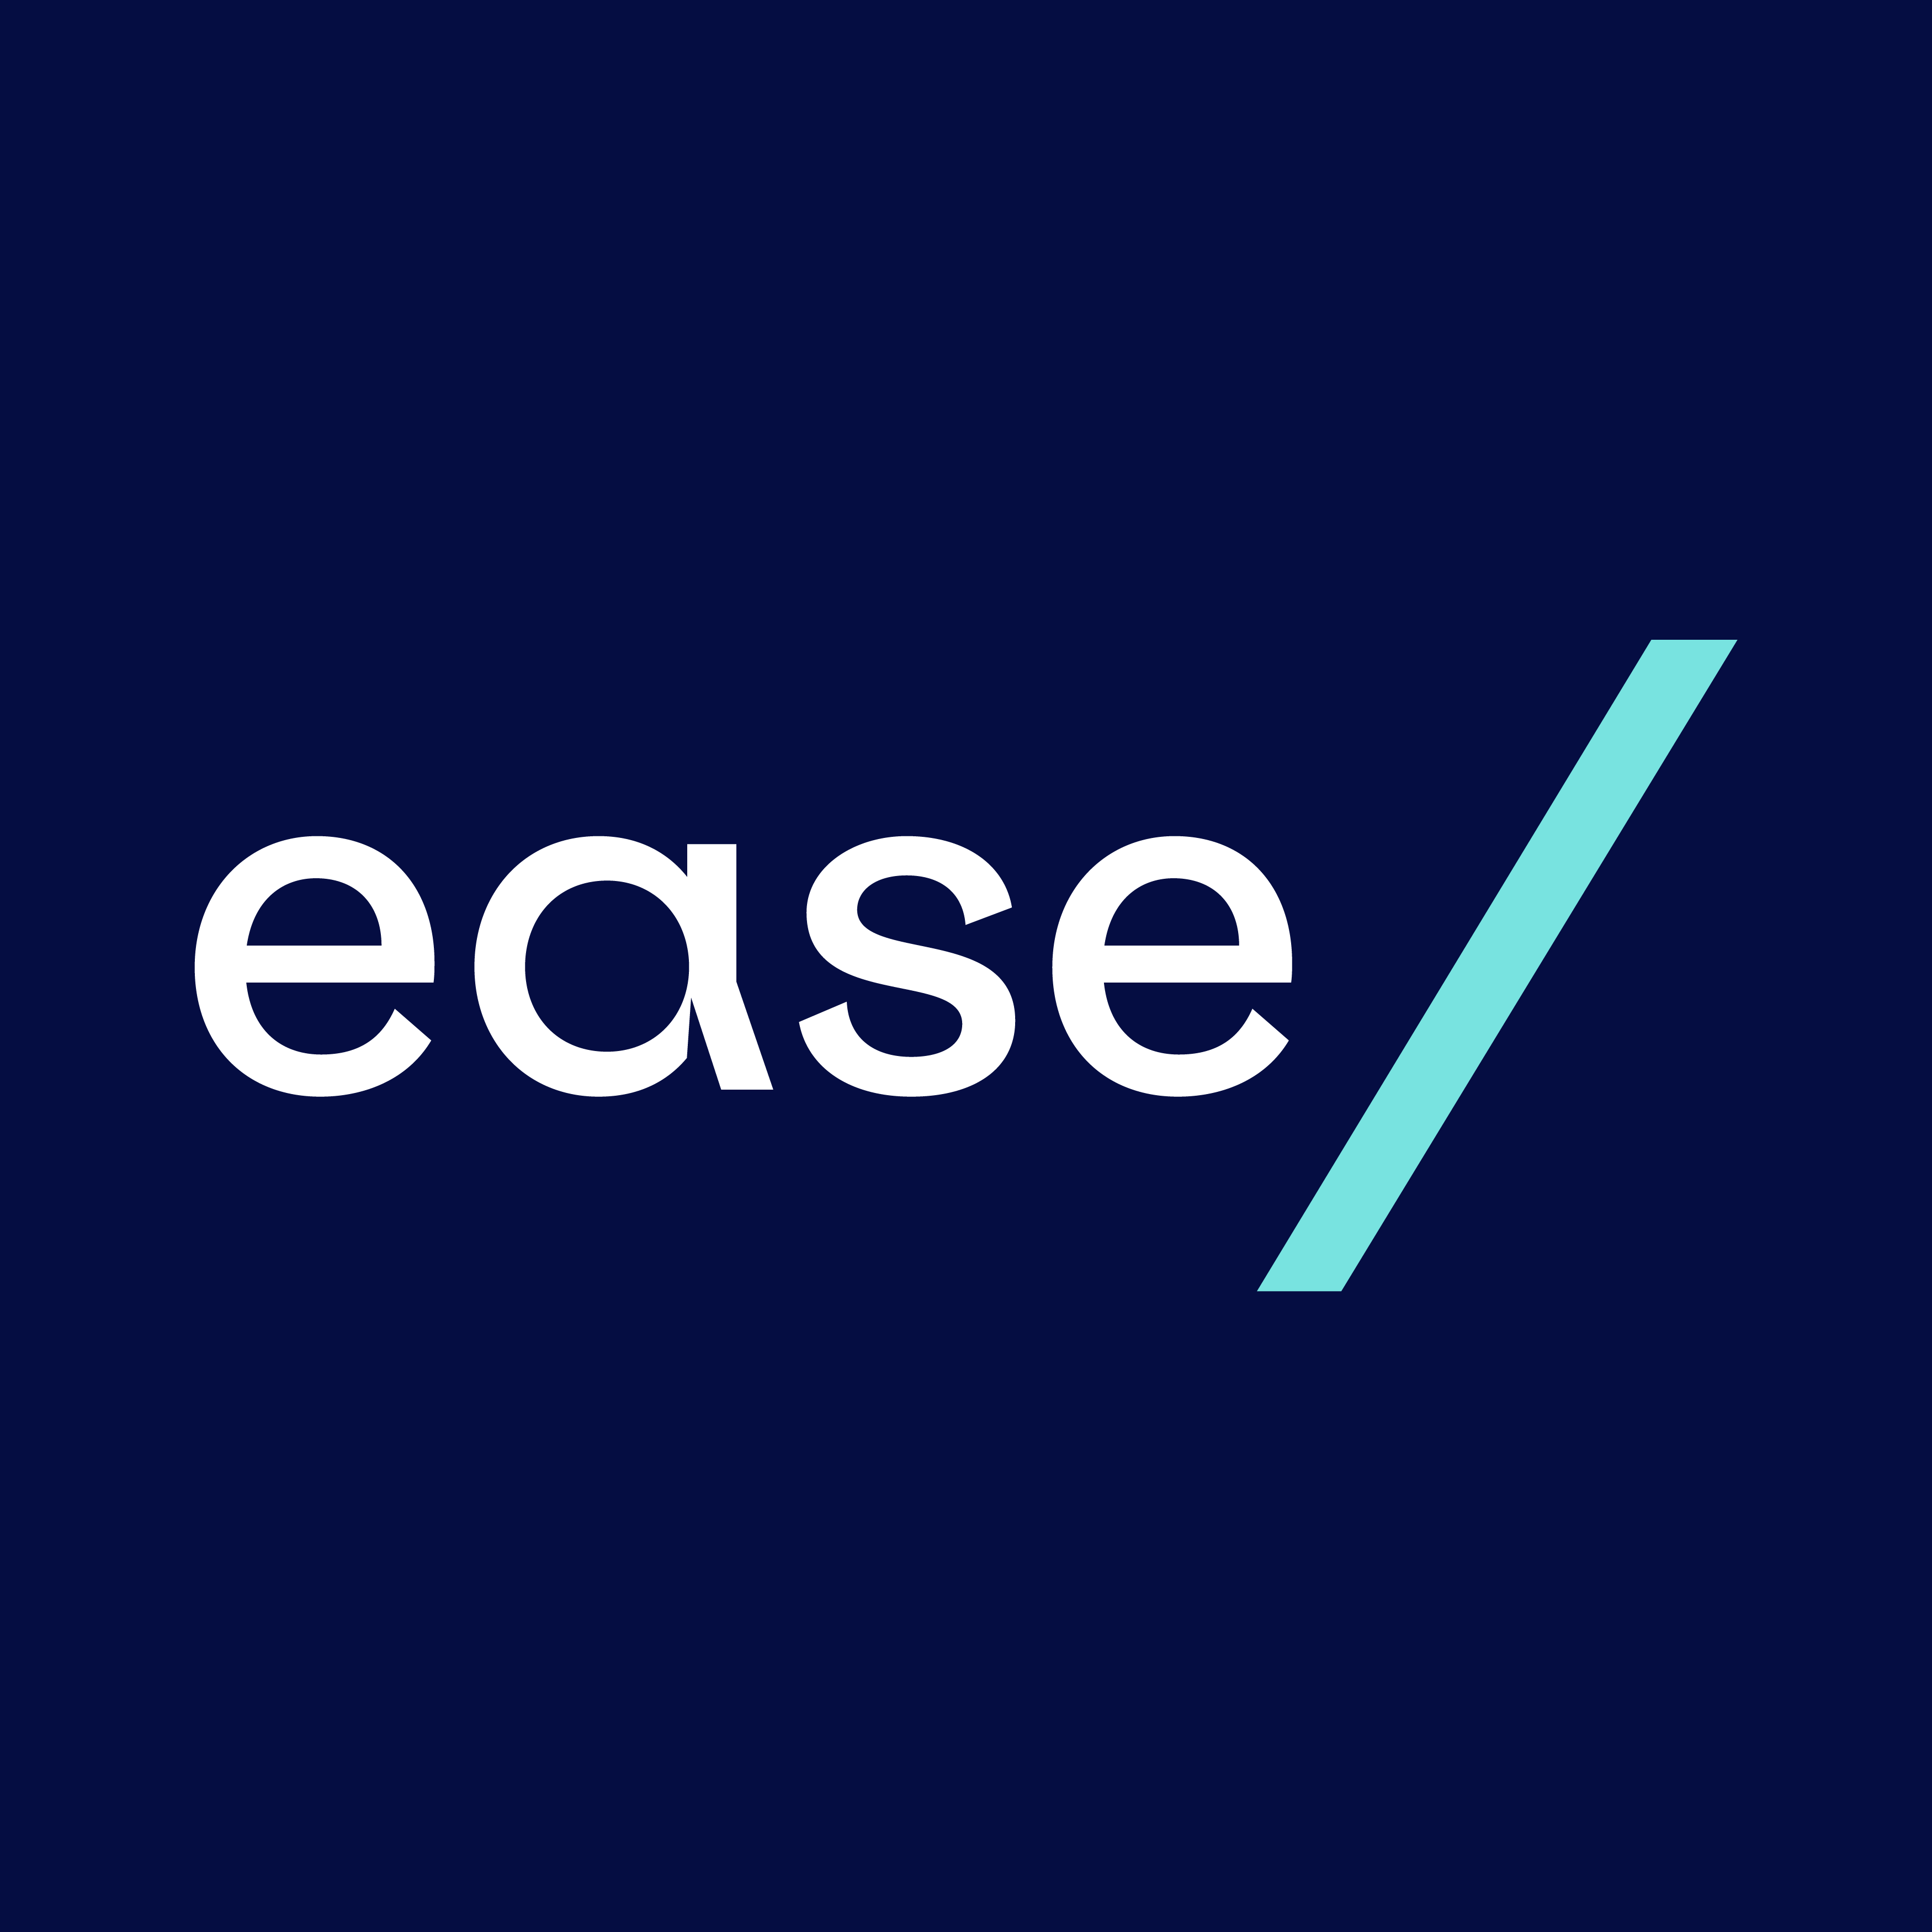 (c) Ease.org.uk